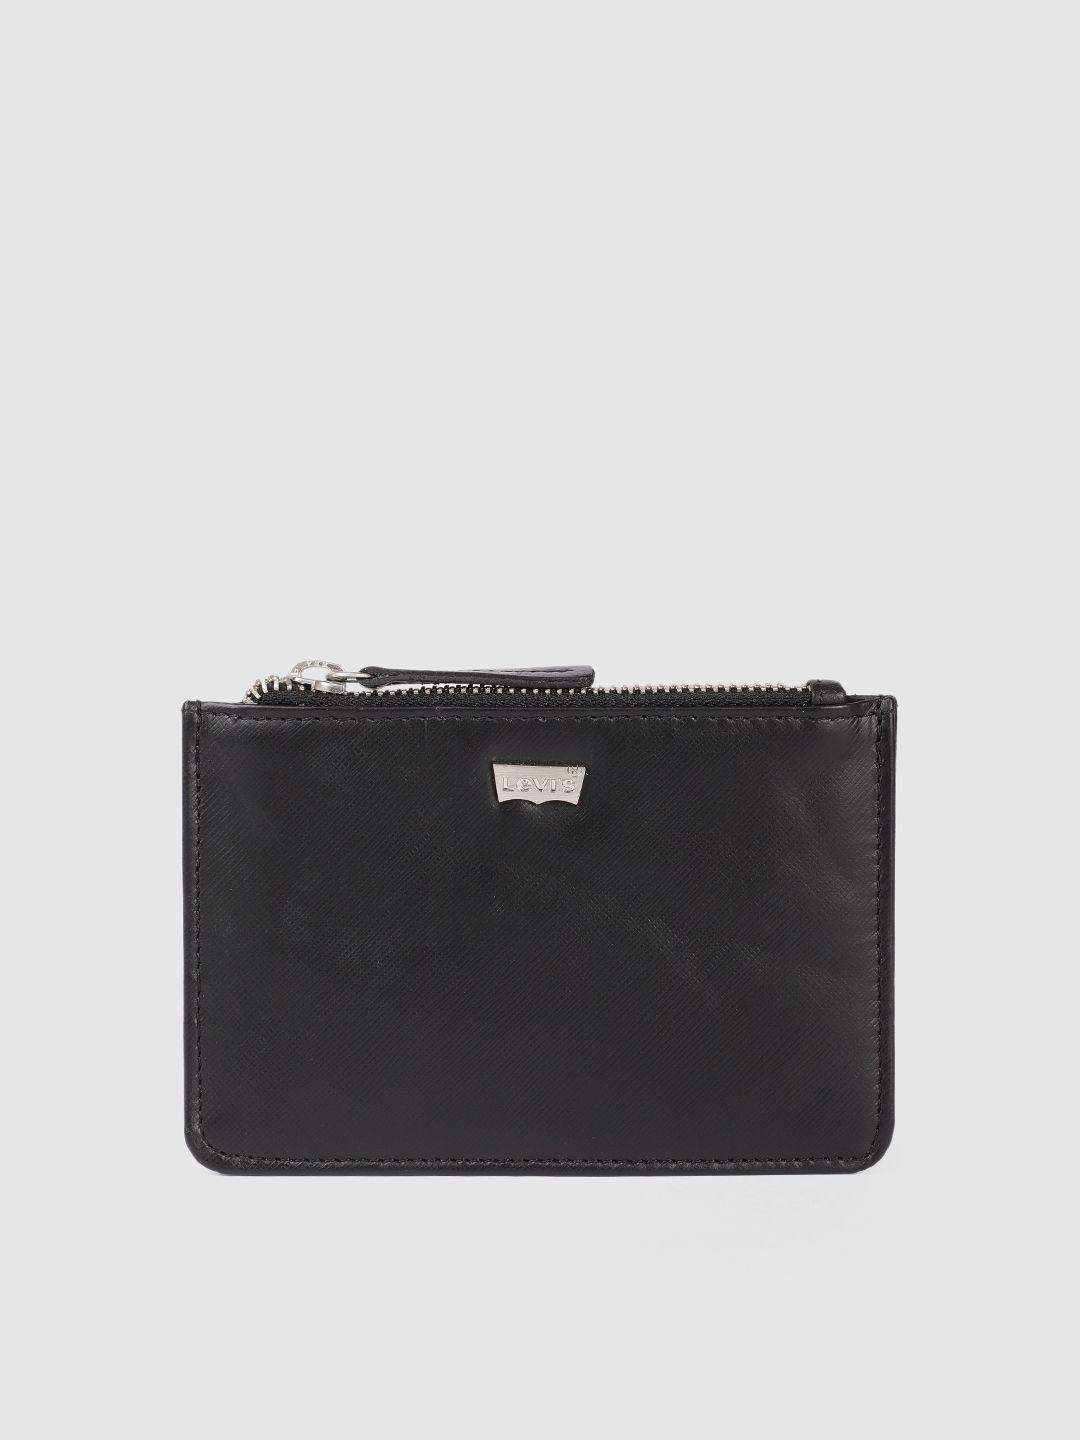 levis-men-black-leather-zip-around-wallet